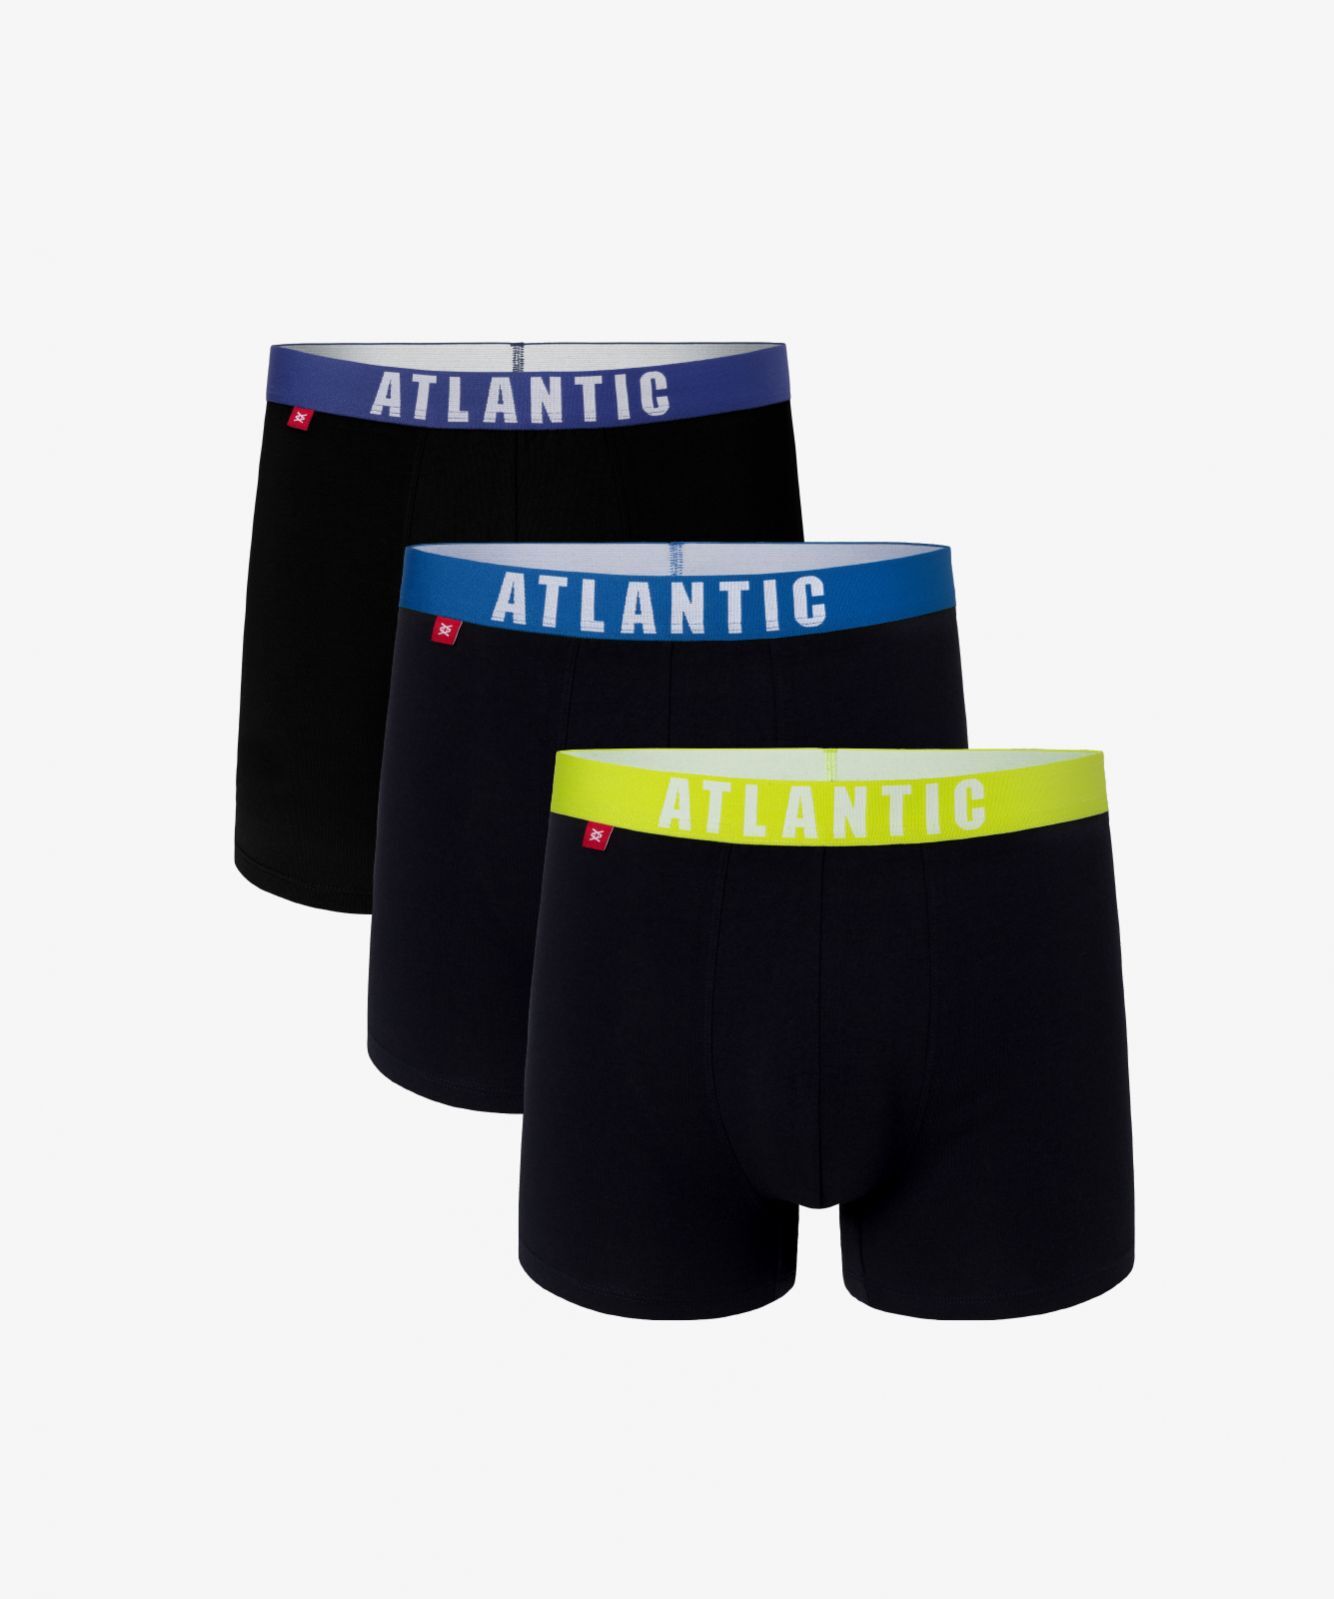 Мужские трусы шорты Atlantic, набор из 3 шт., хлопок, темно-синий микс, 3MH-011